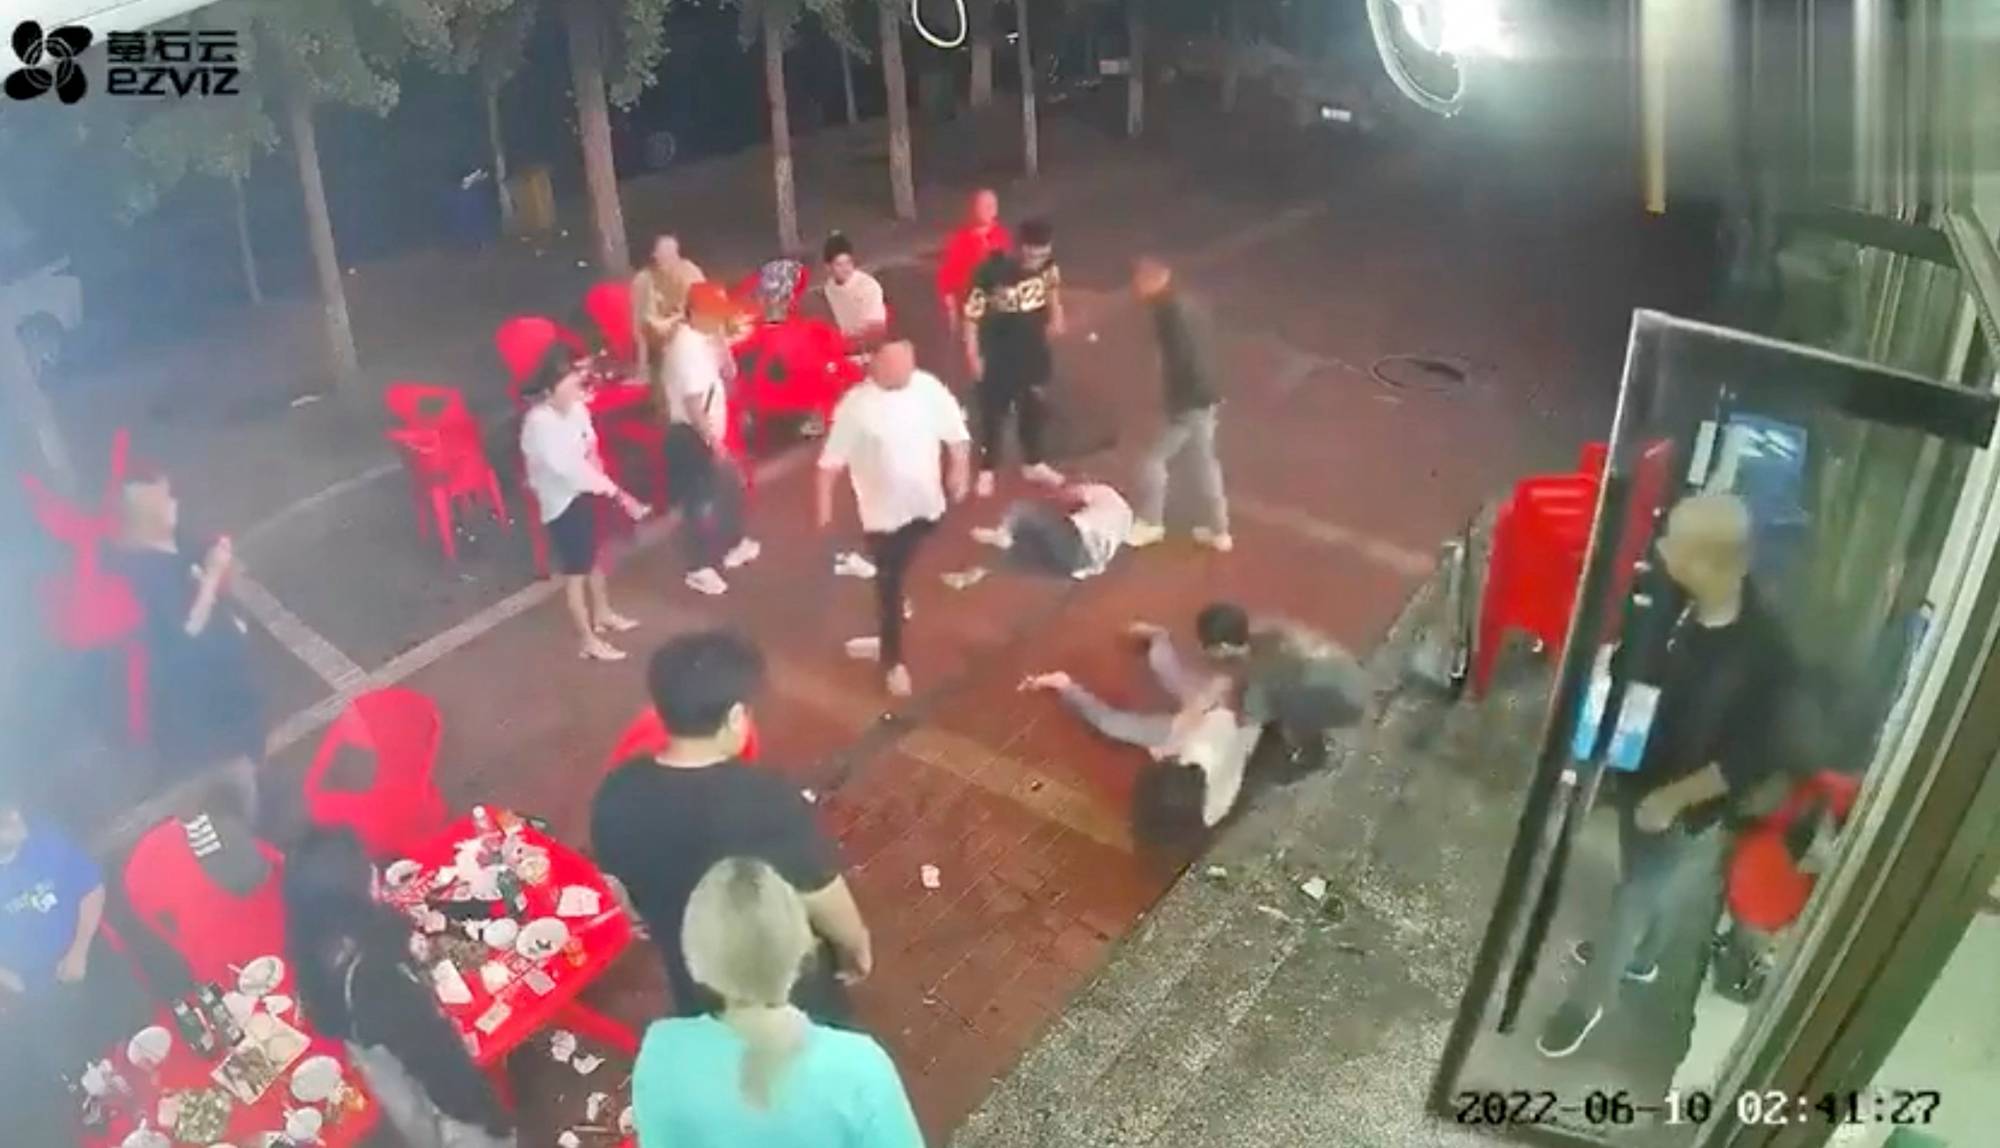 China arrests nine men after violent attack on women sparks fury pic